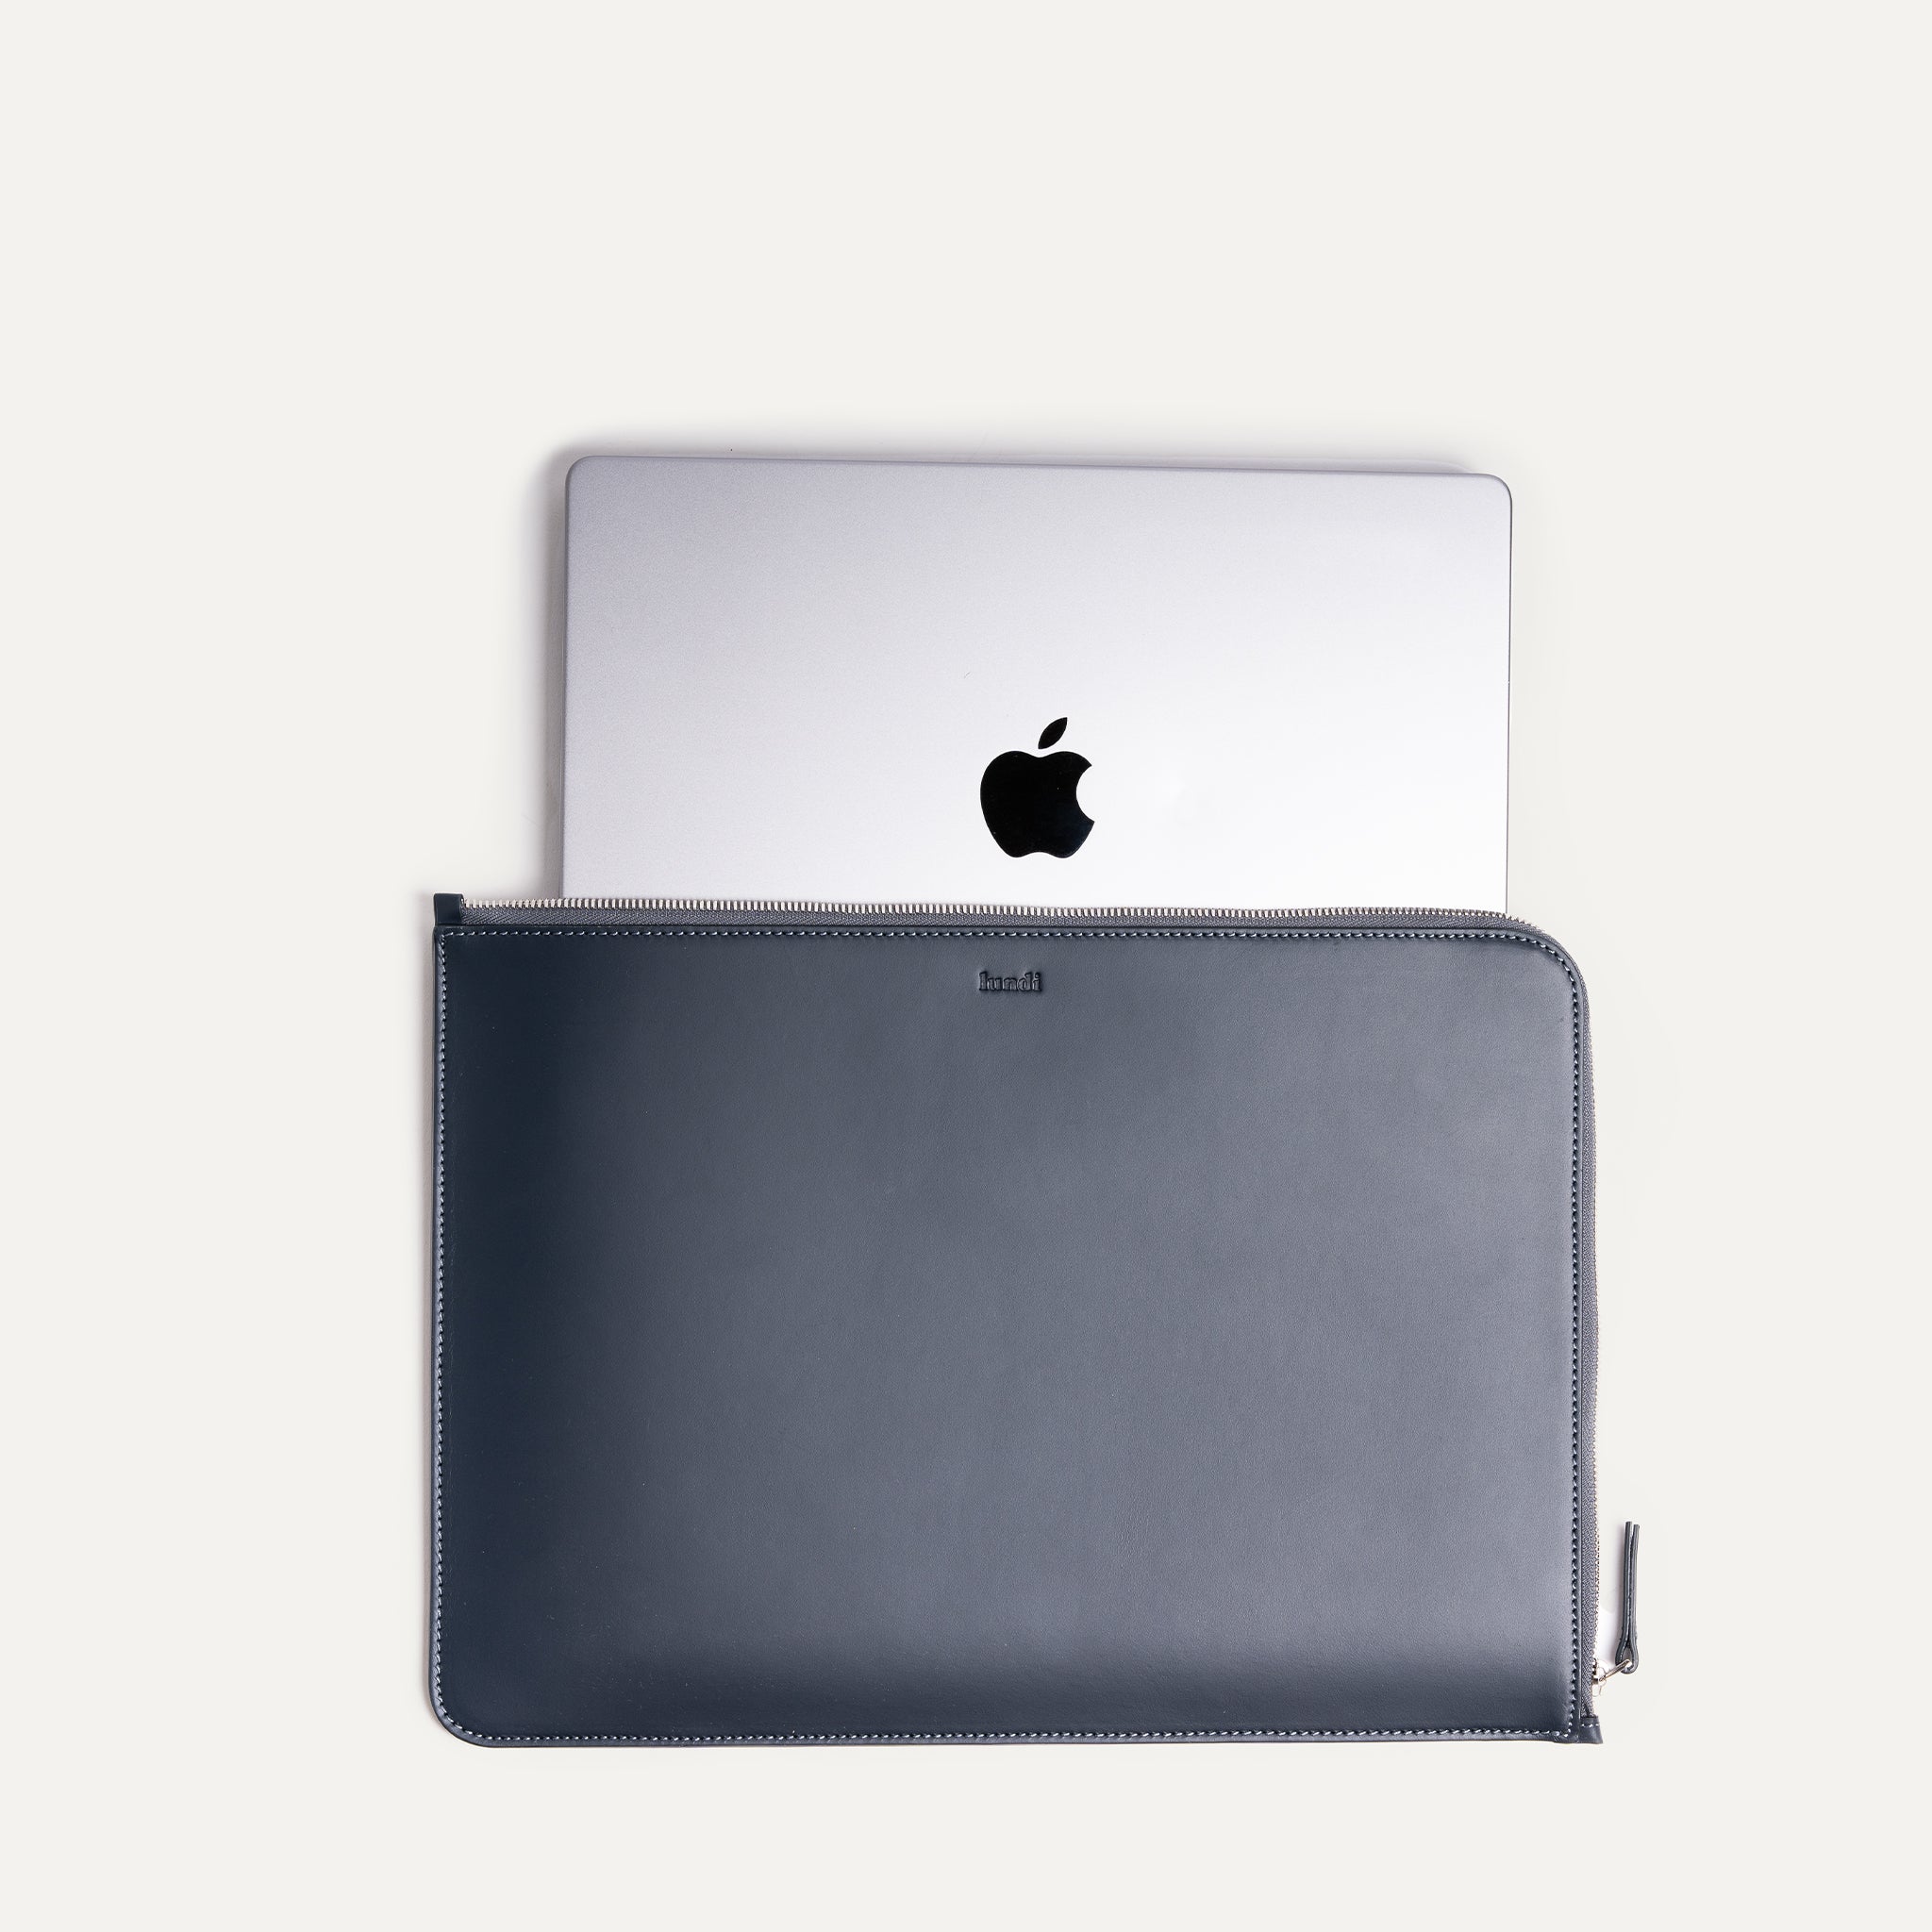 Cette pochette pour ordinateur portable en cuir bleu marine est idéale pour une utilisation quotidienne pour protéger votre ordinateur et vos accessoires, elle protège efficacement contre les chocs et les rayures. 